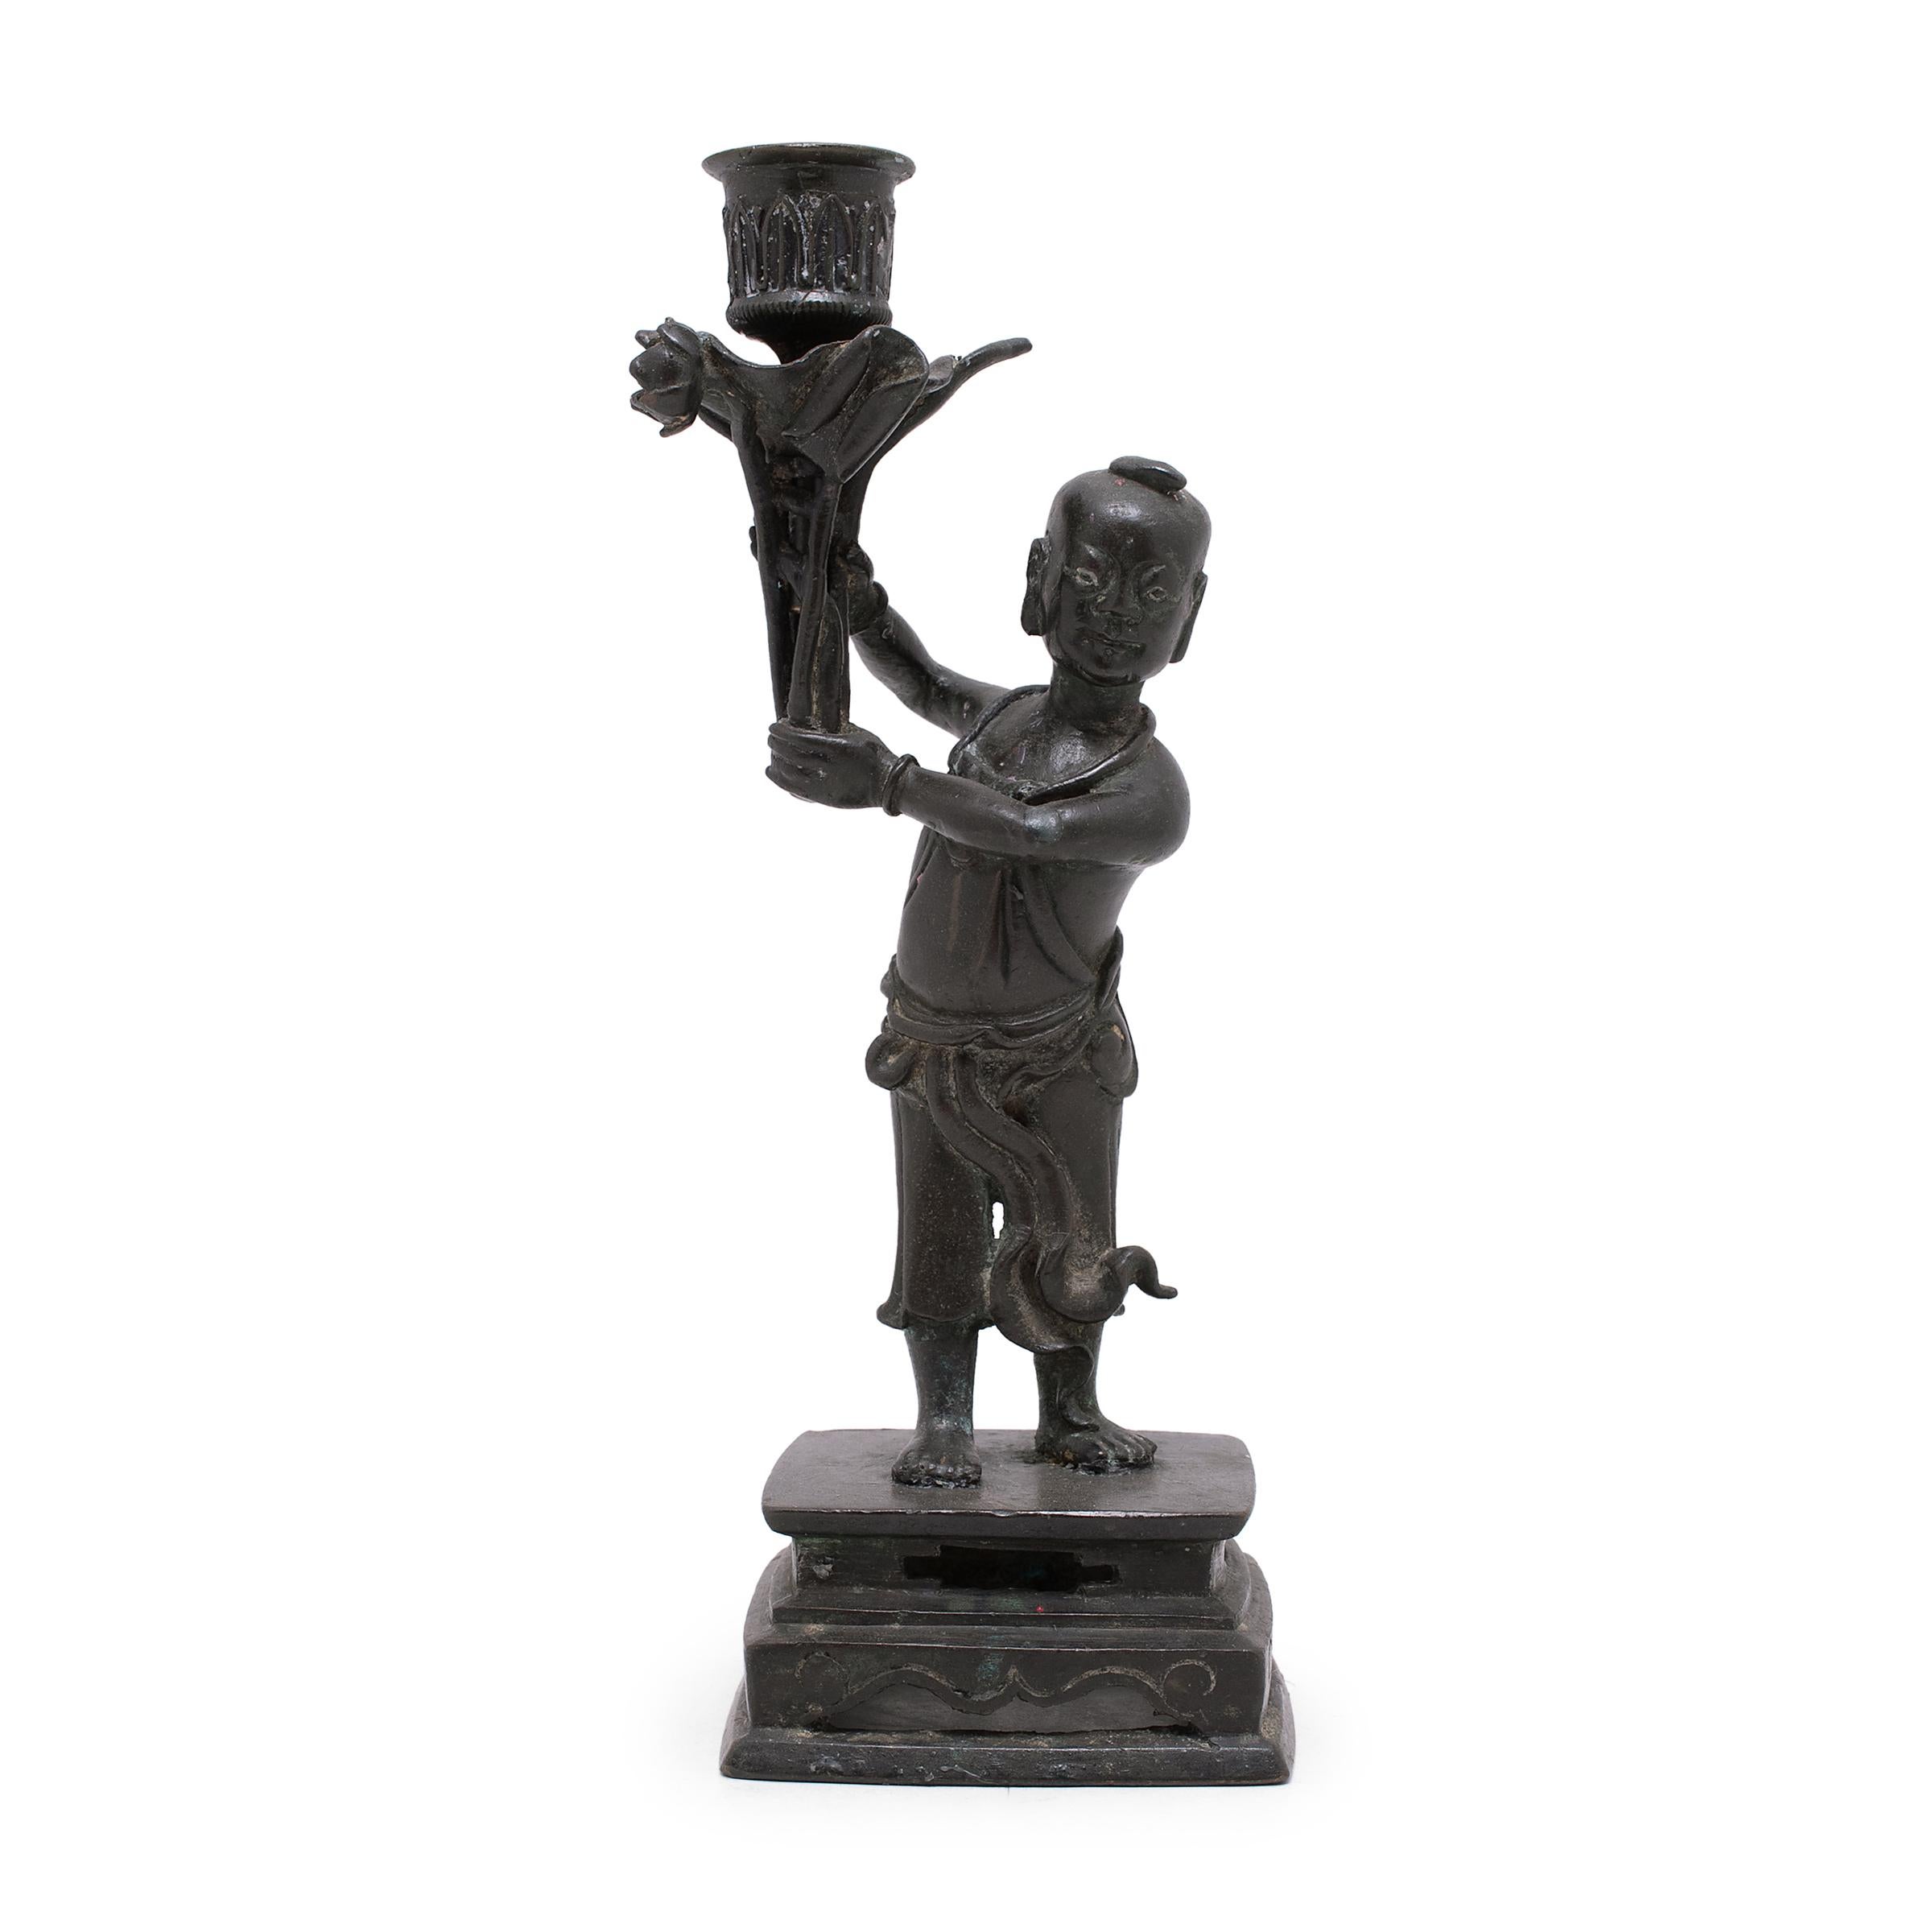 Ces chandeliers du début du 20e siècle sont en bronze et représentent deux jeunes garçons vêtus de vêtements fluides et reposant sur des socles carrés. Chaque garçon tient au-dessus de sa tête un plat contenant des bougies, au milieu d'une grappe de